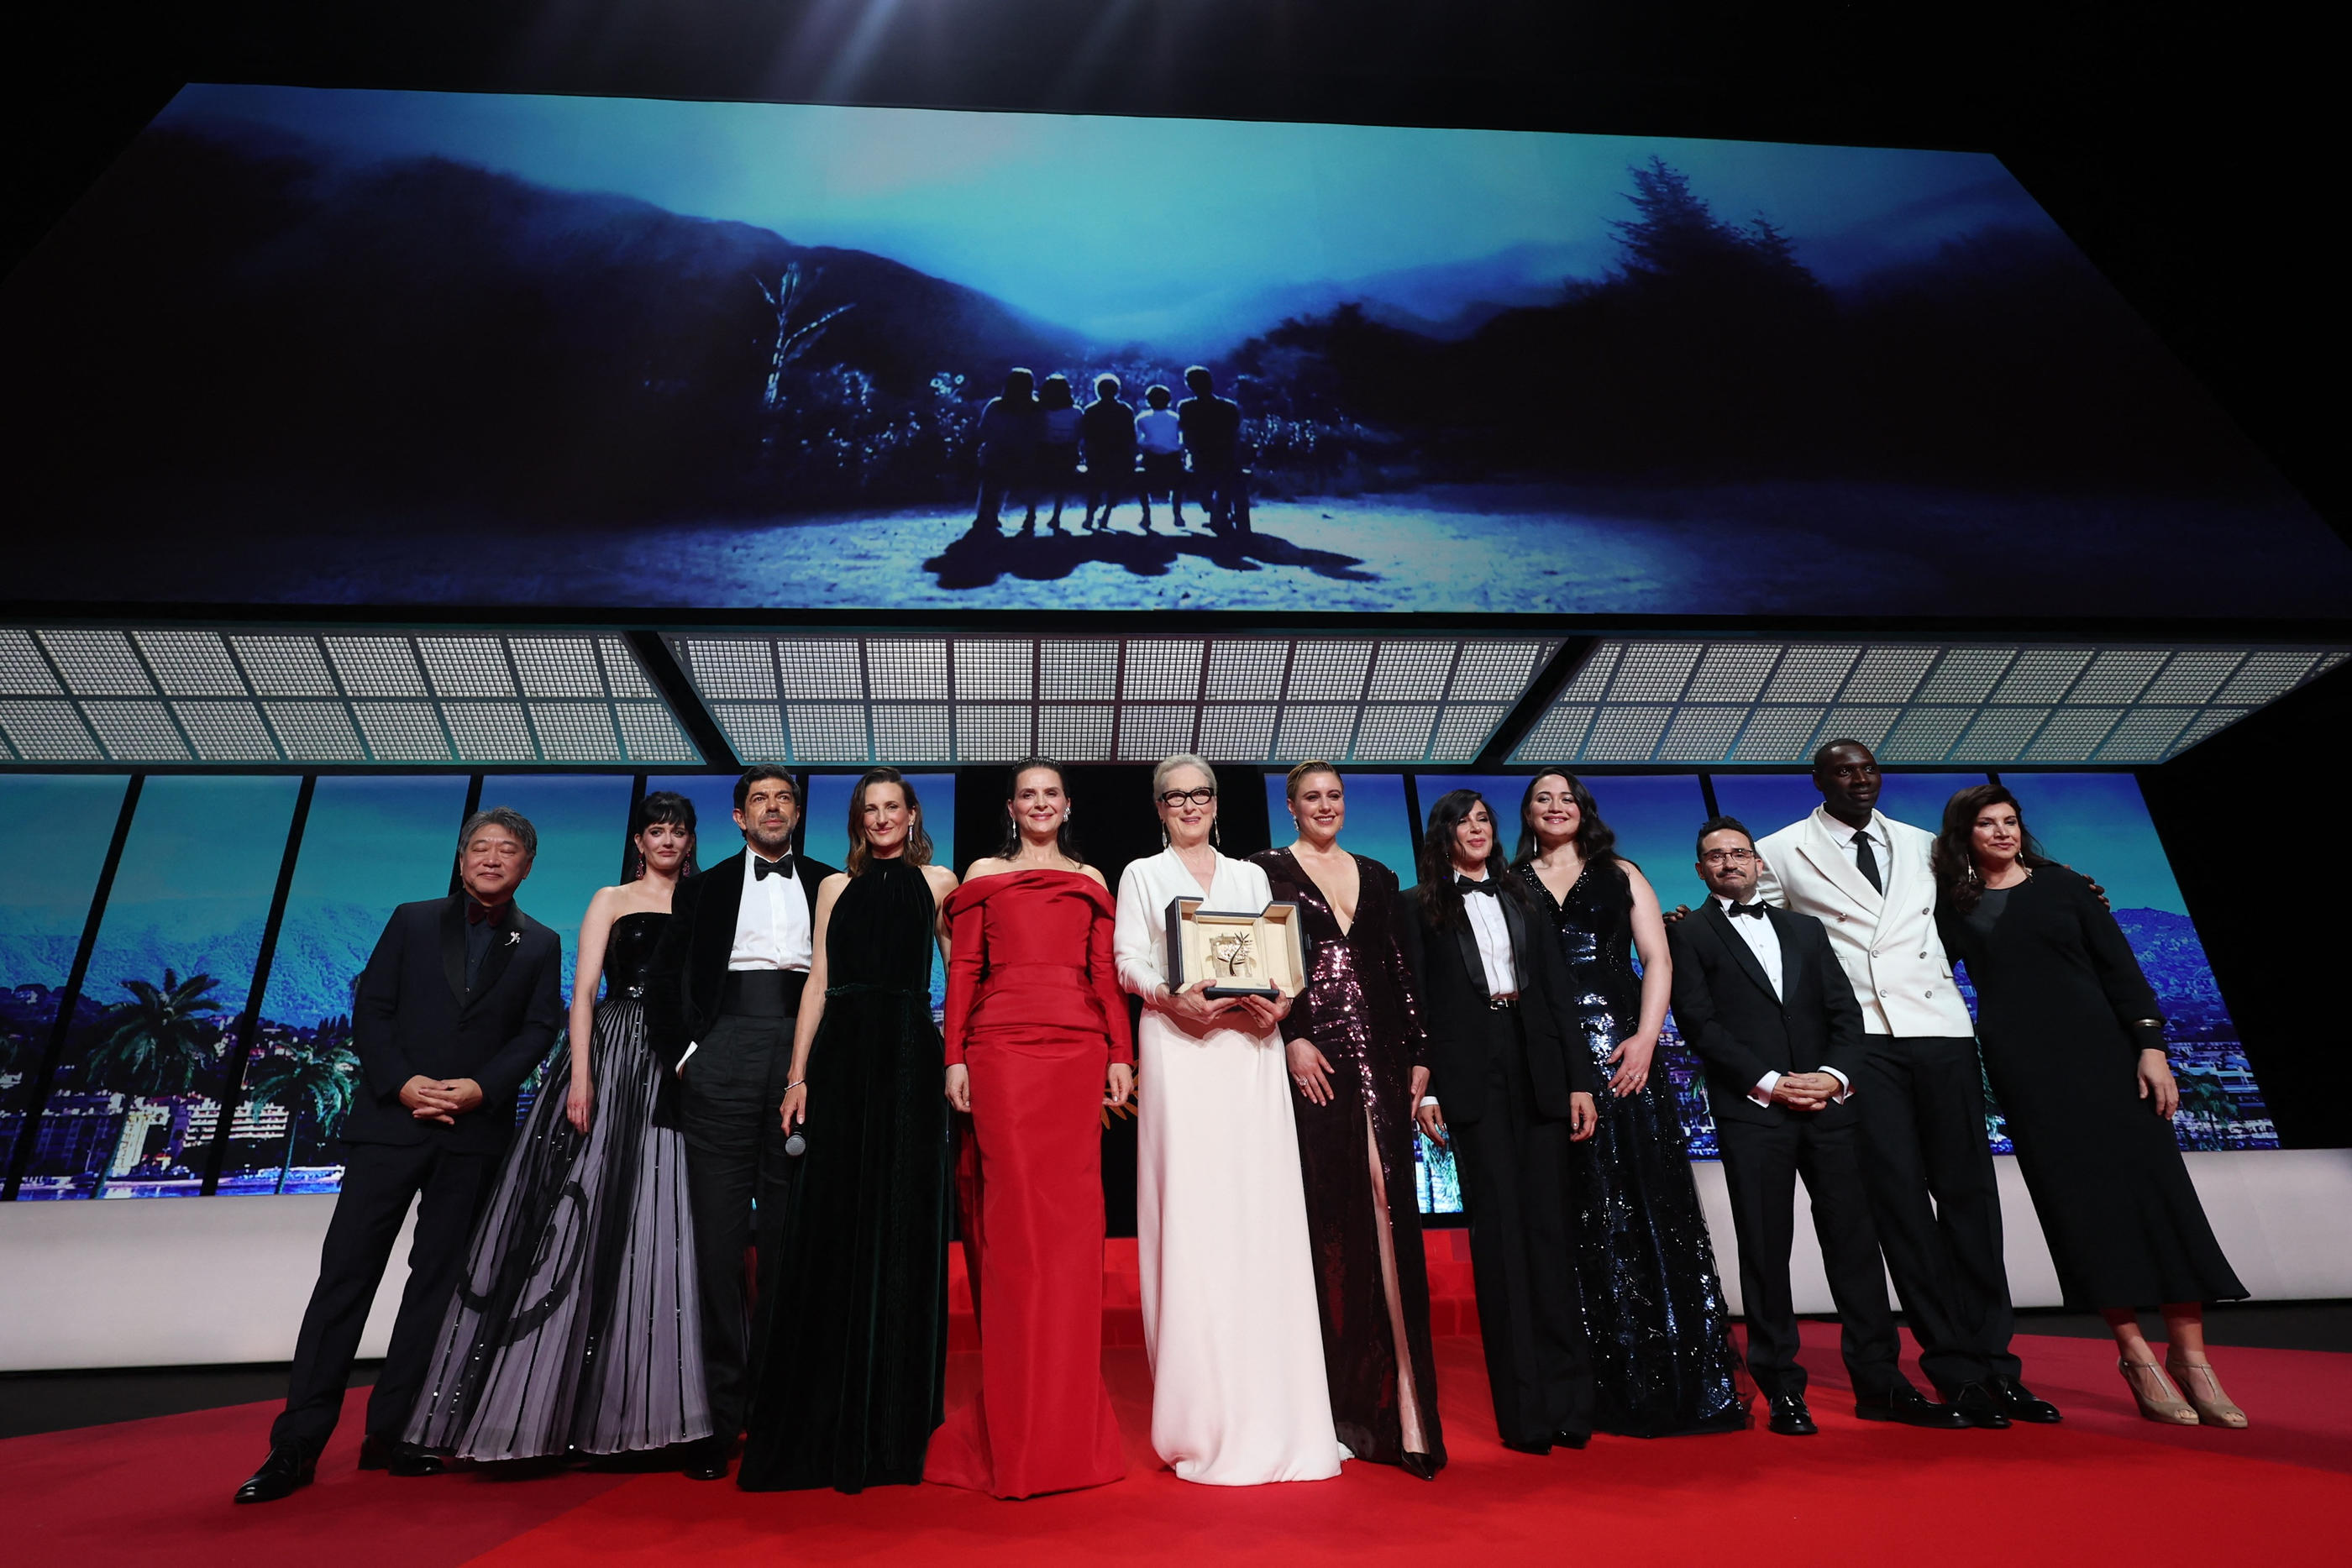 L'actrice américaine Meryl Streep pose avec le jury de cette 77e édition du Festival de Cannes et la maîtresse de cérémonie, Camille Cottin. Reuters/Yara Nardi